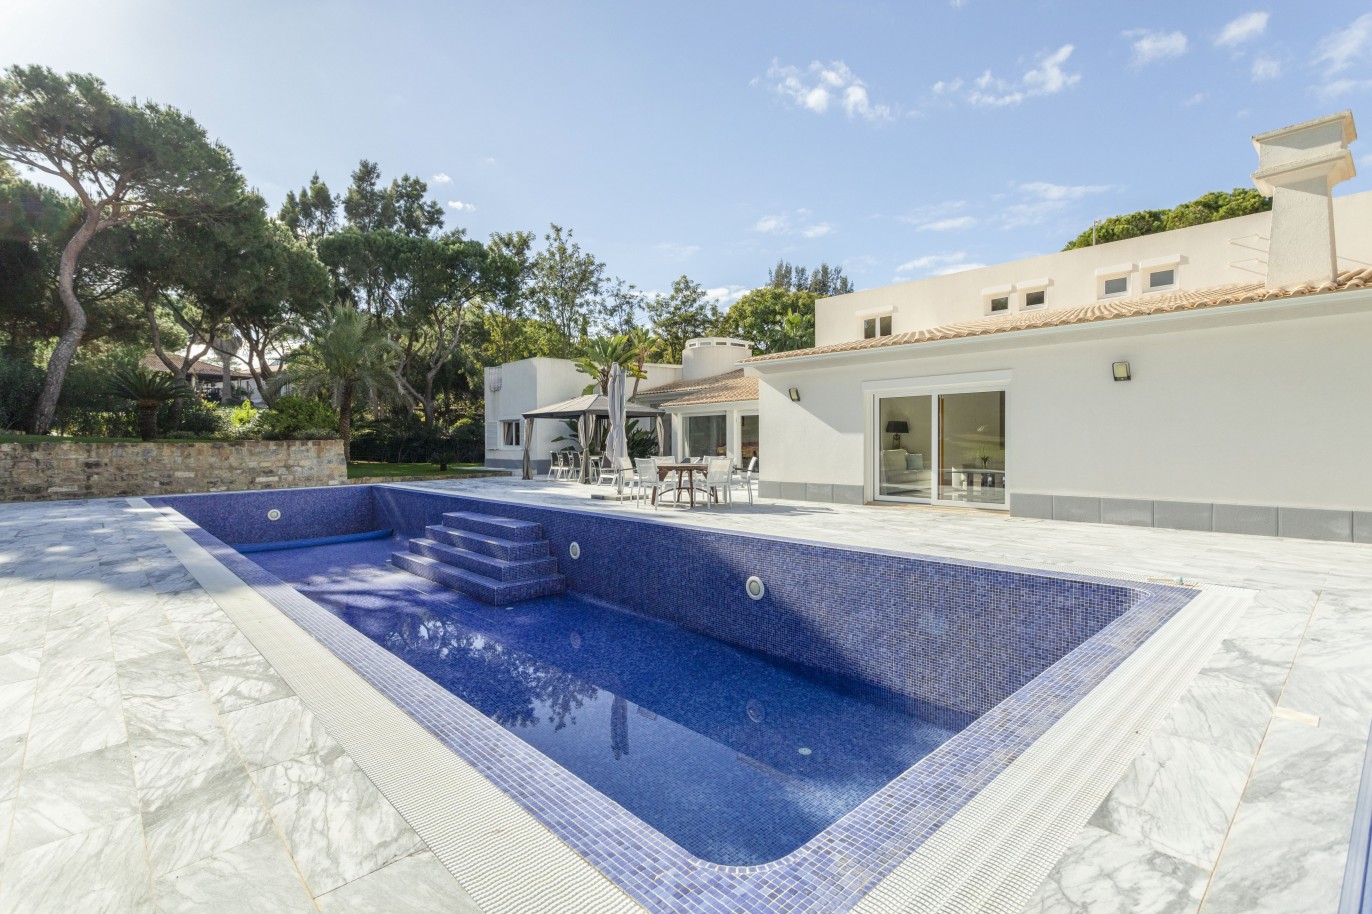 Moradia de luxo V5+2 com piscina, para venda em Vilamoura, Algarve_248131